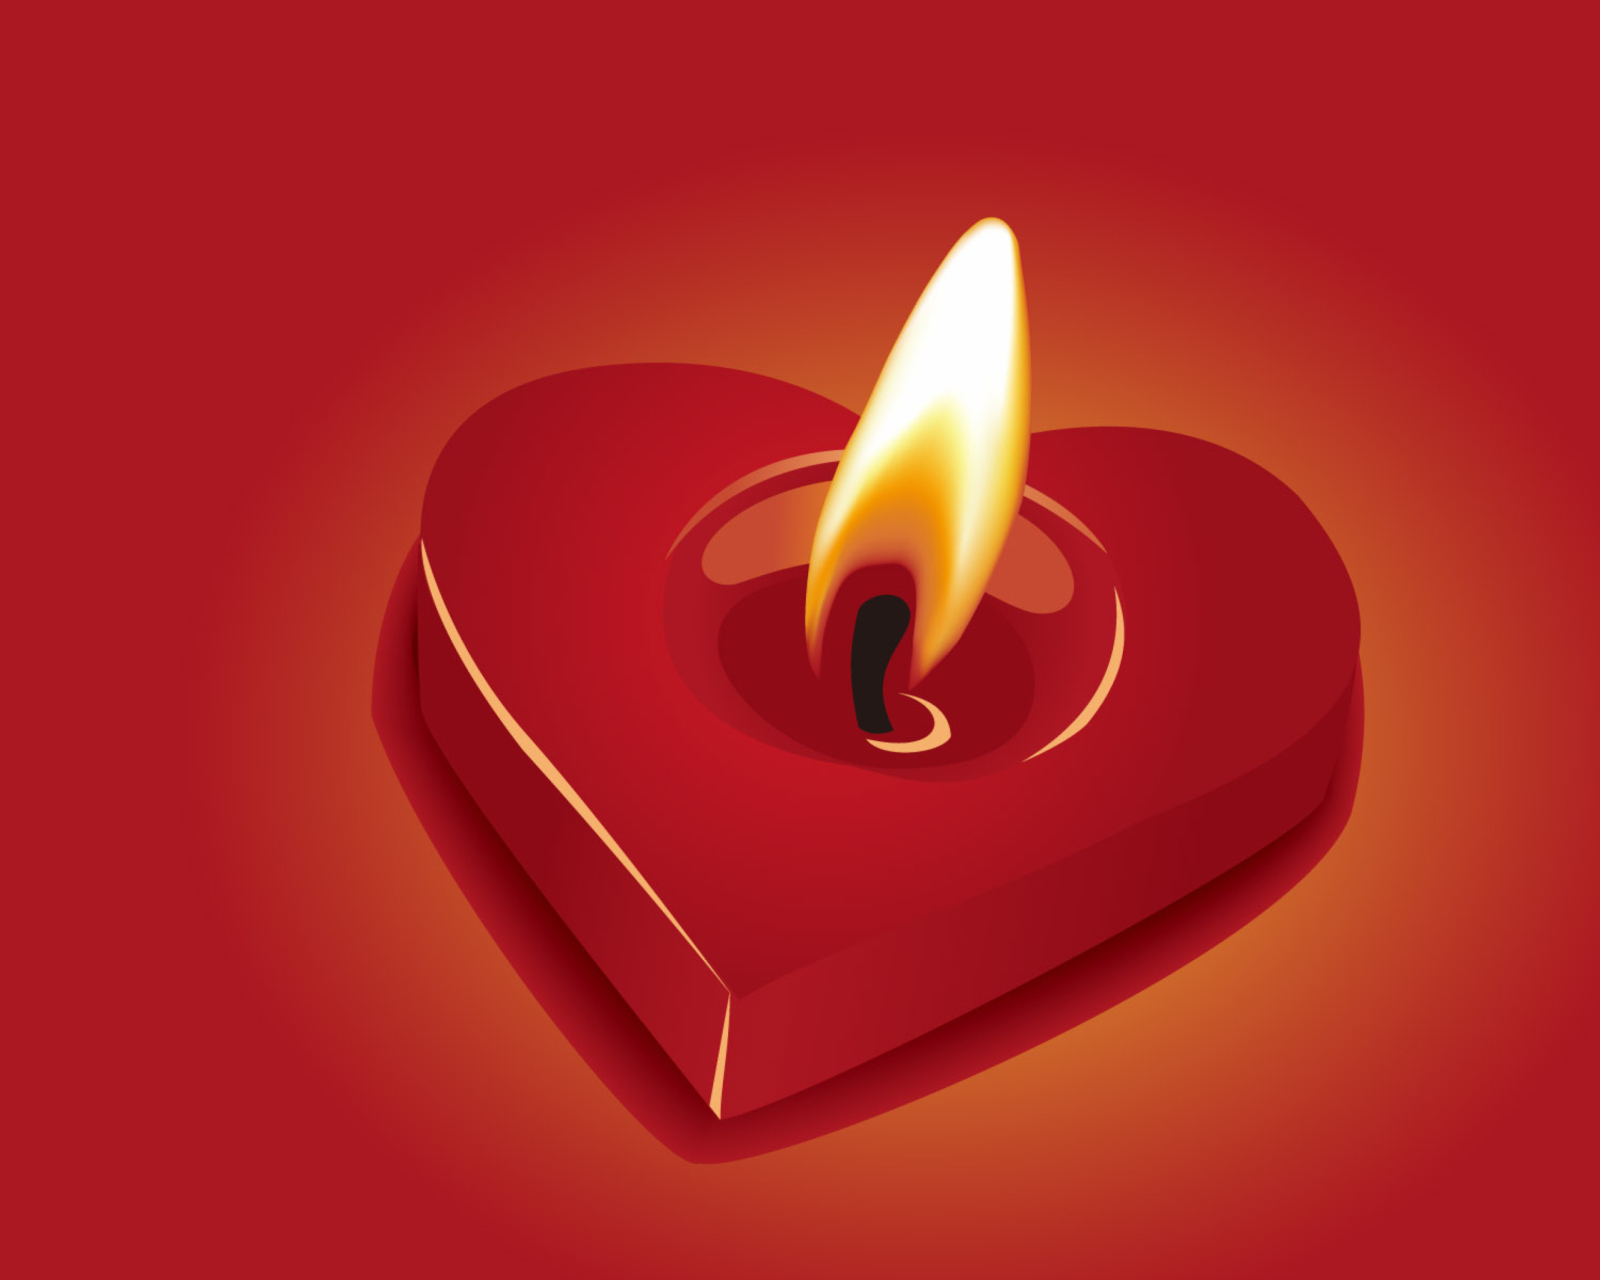 Обои Heart Shaped Candle 1600x1280